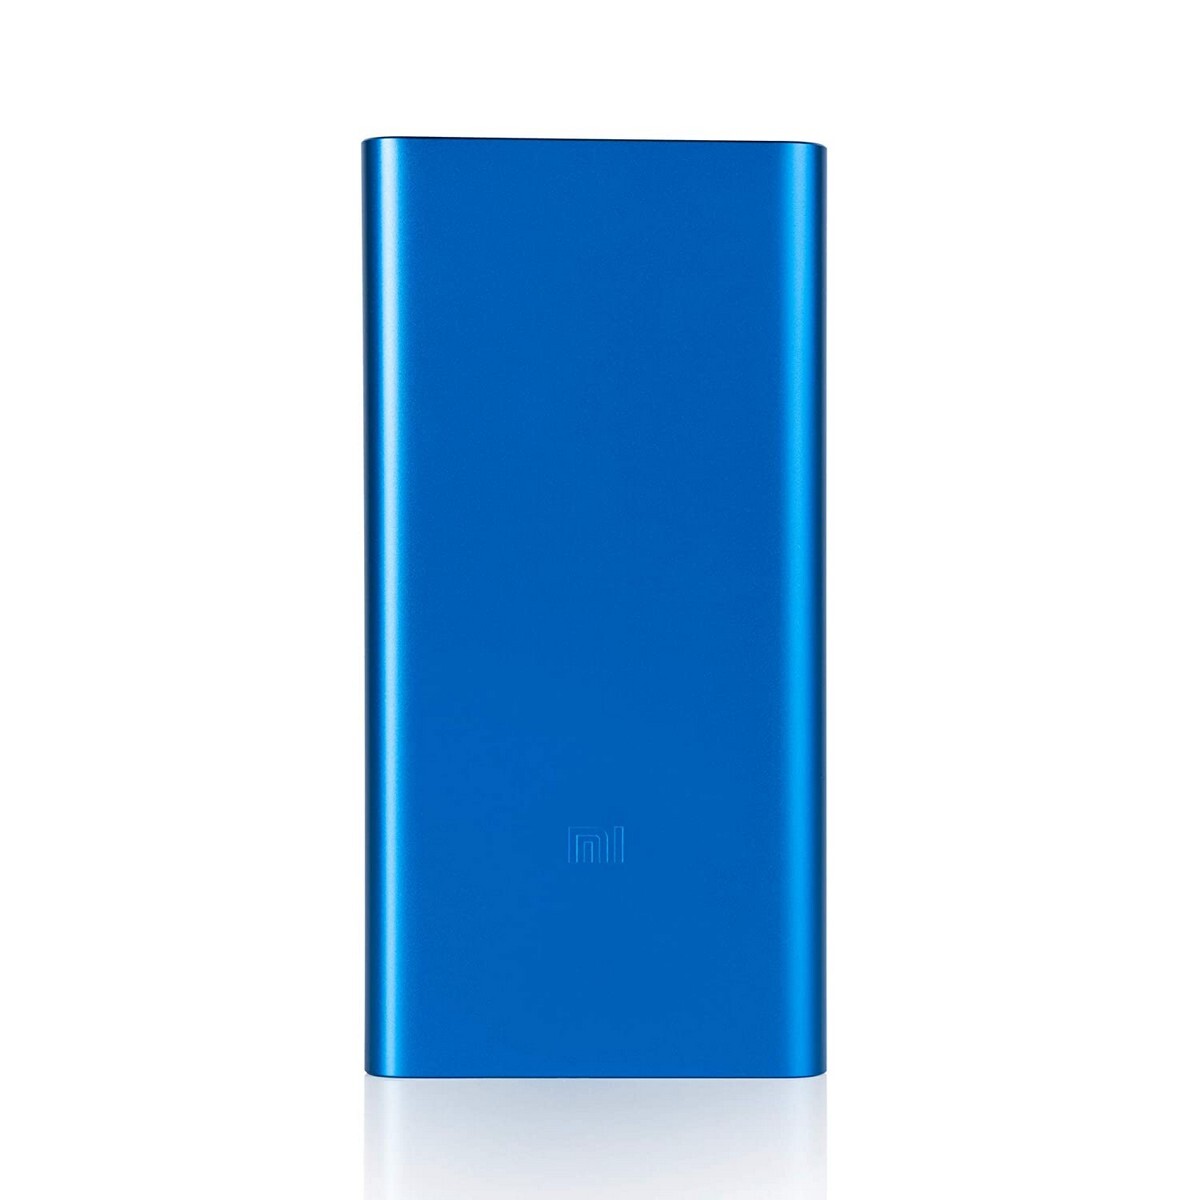 Xiaomi Power Bank 10000 mAh 3i Blue